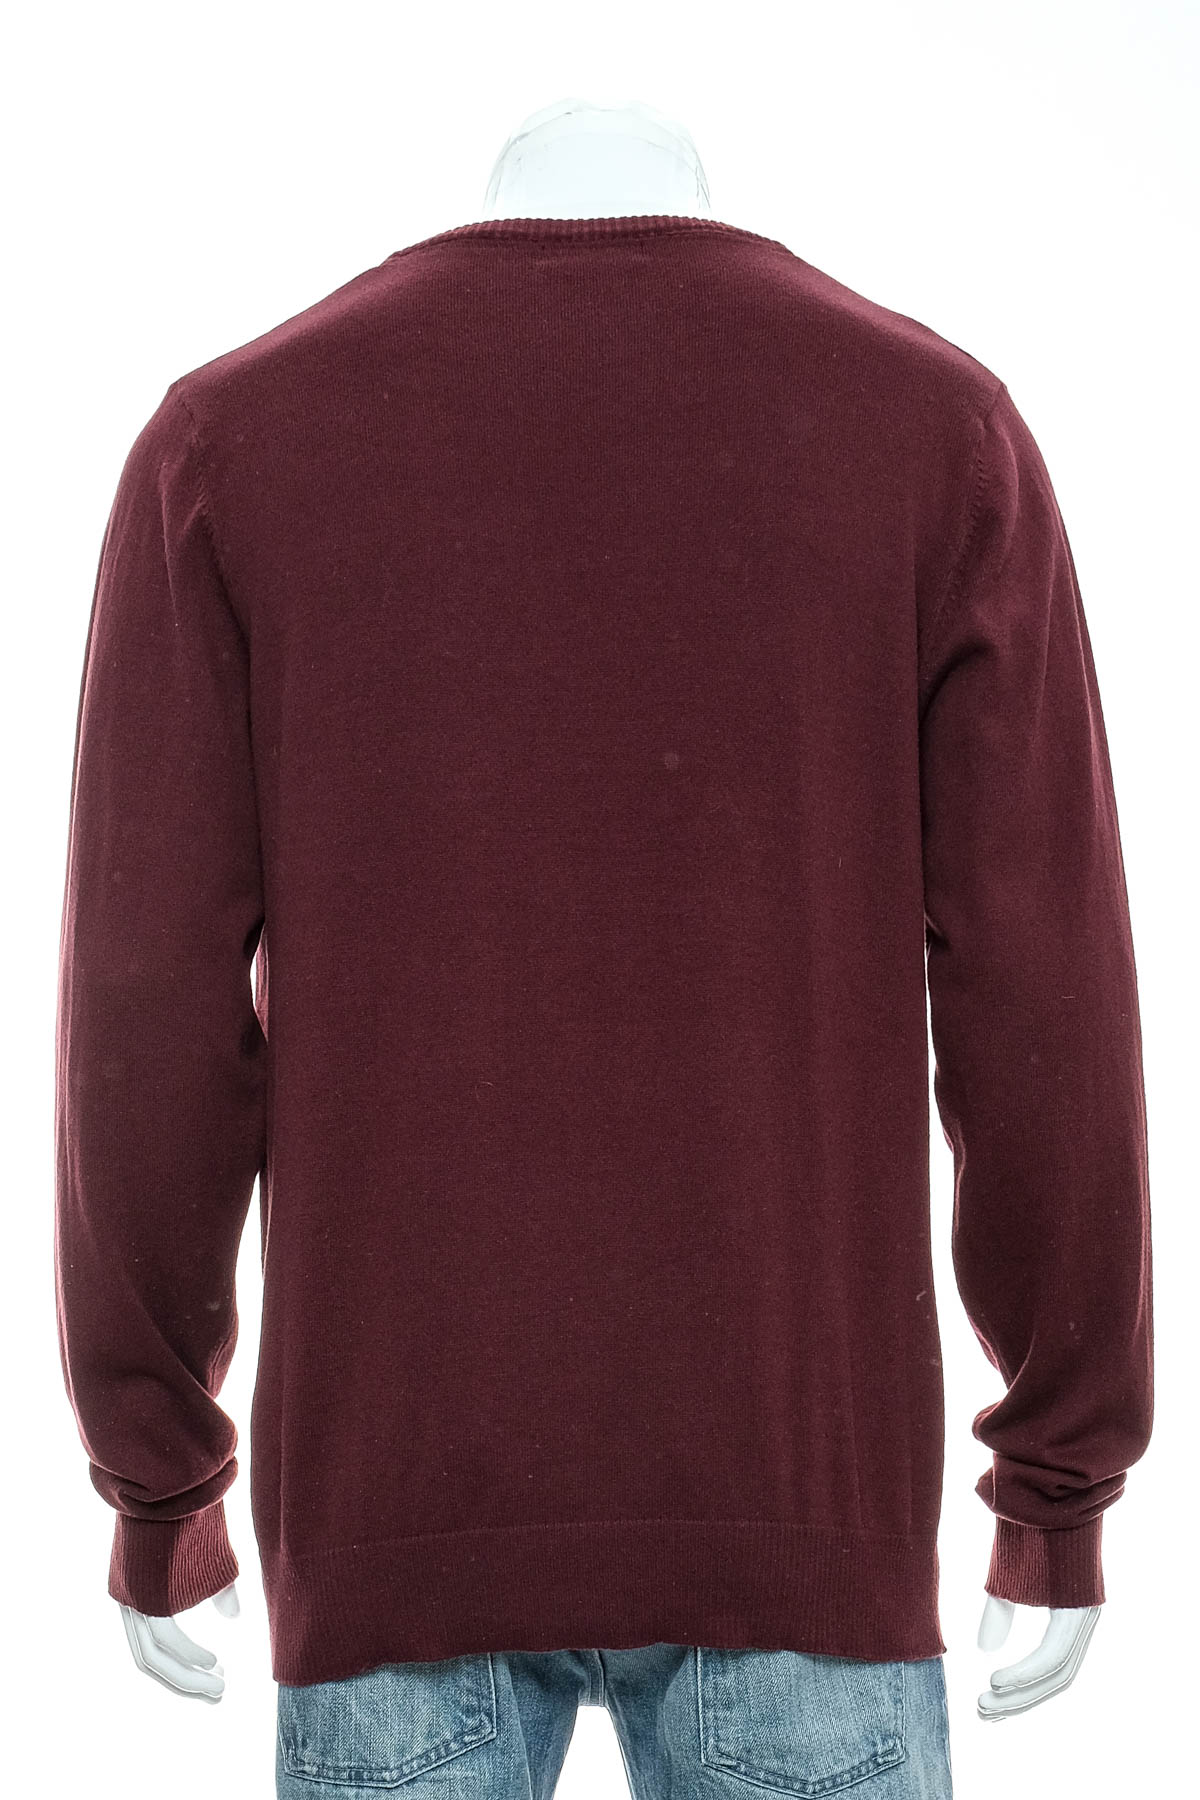 Men's sweater - Collezione - 1